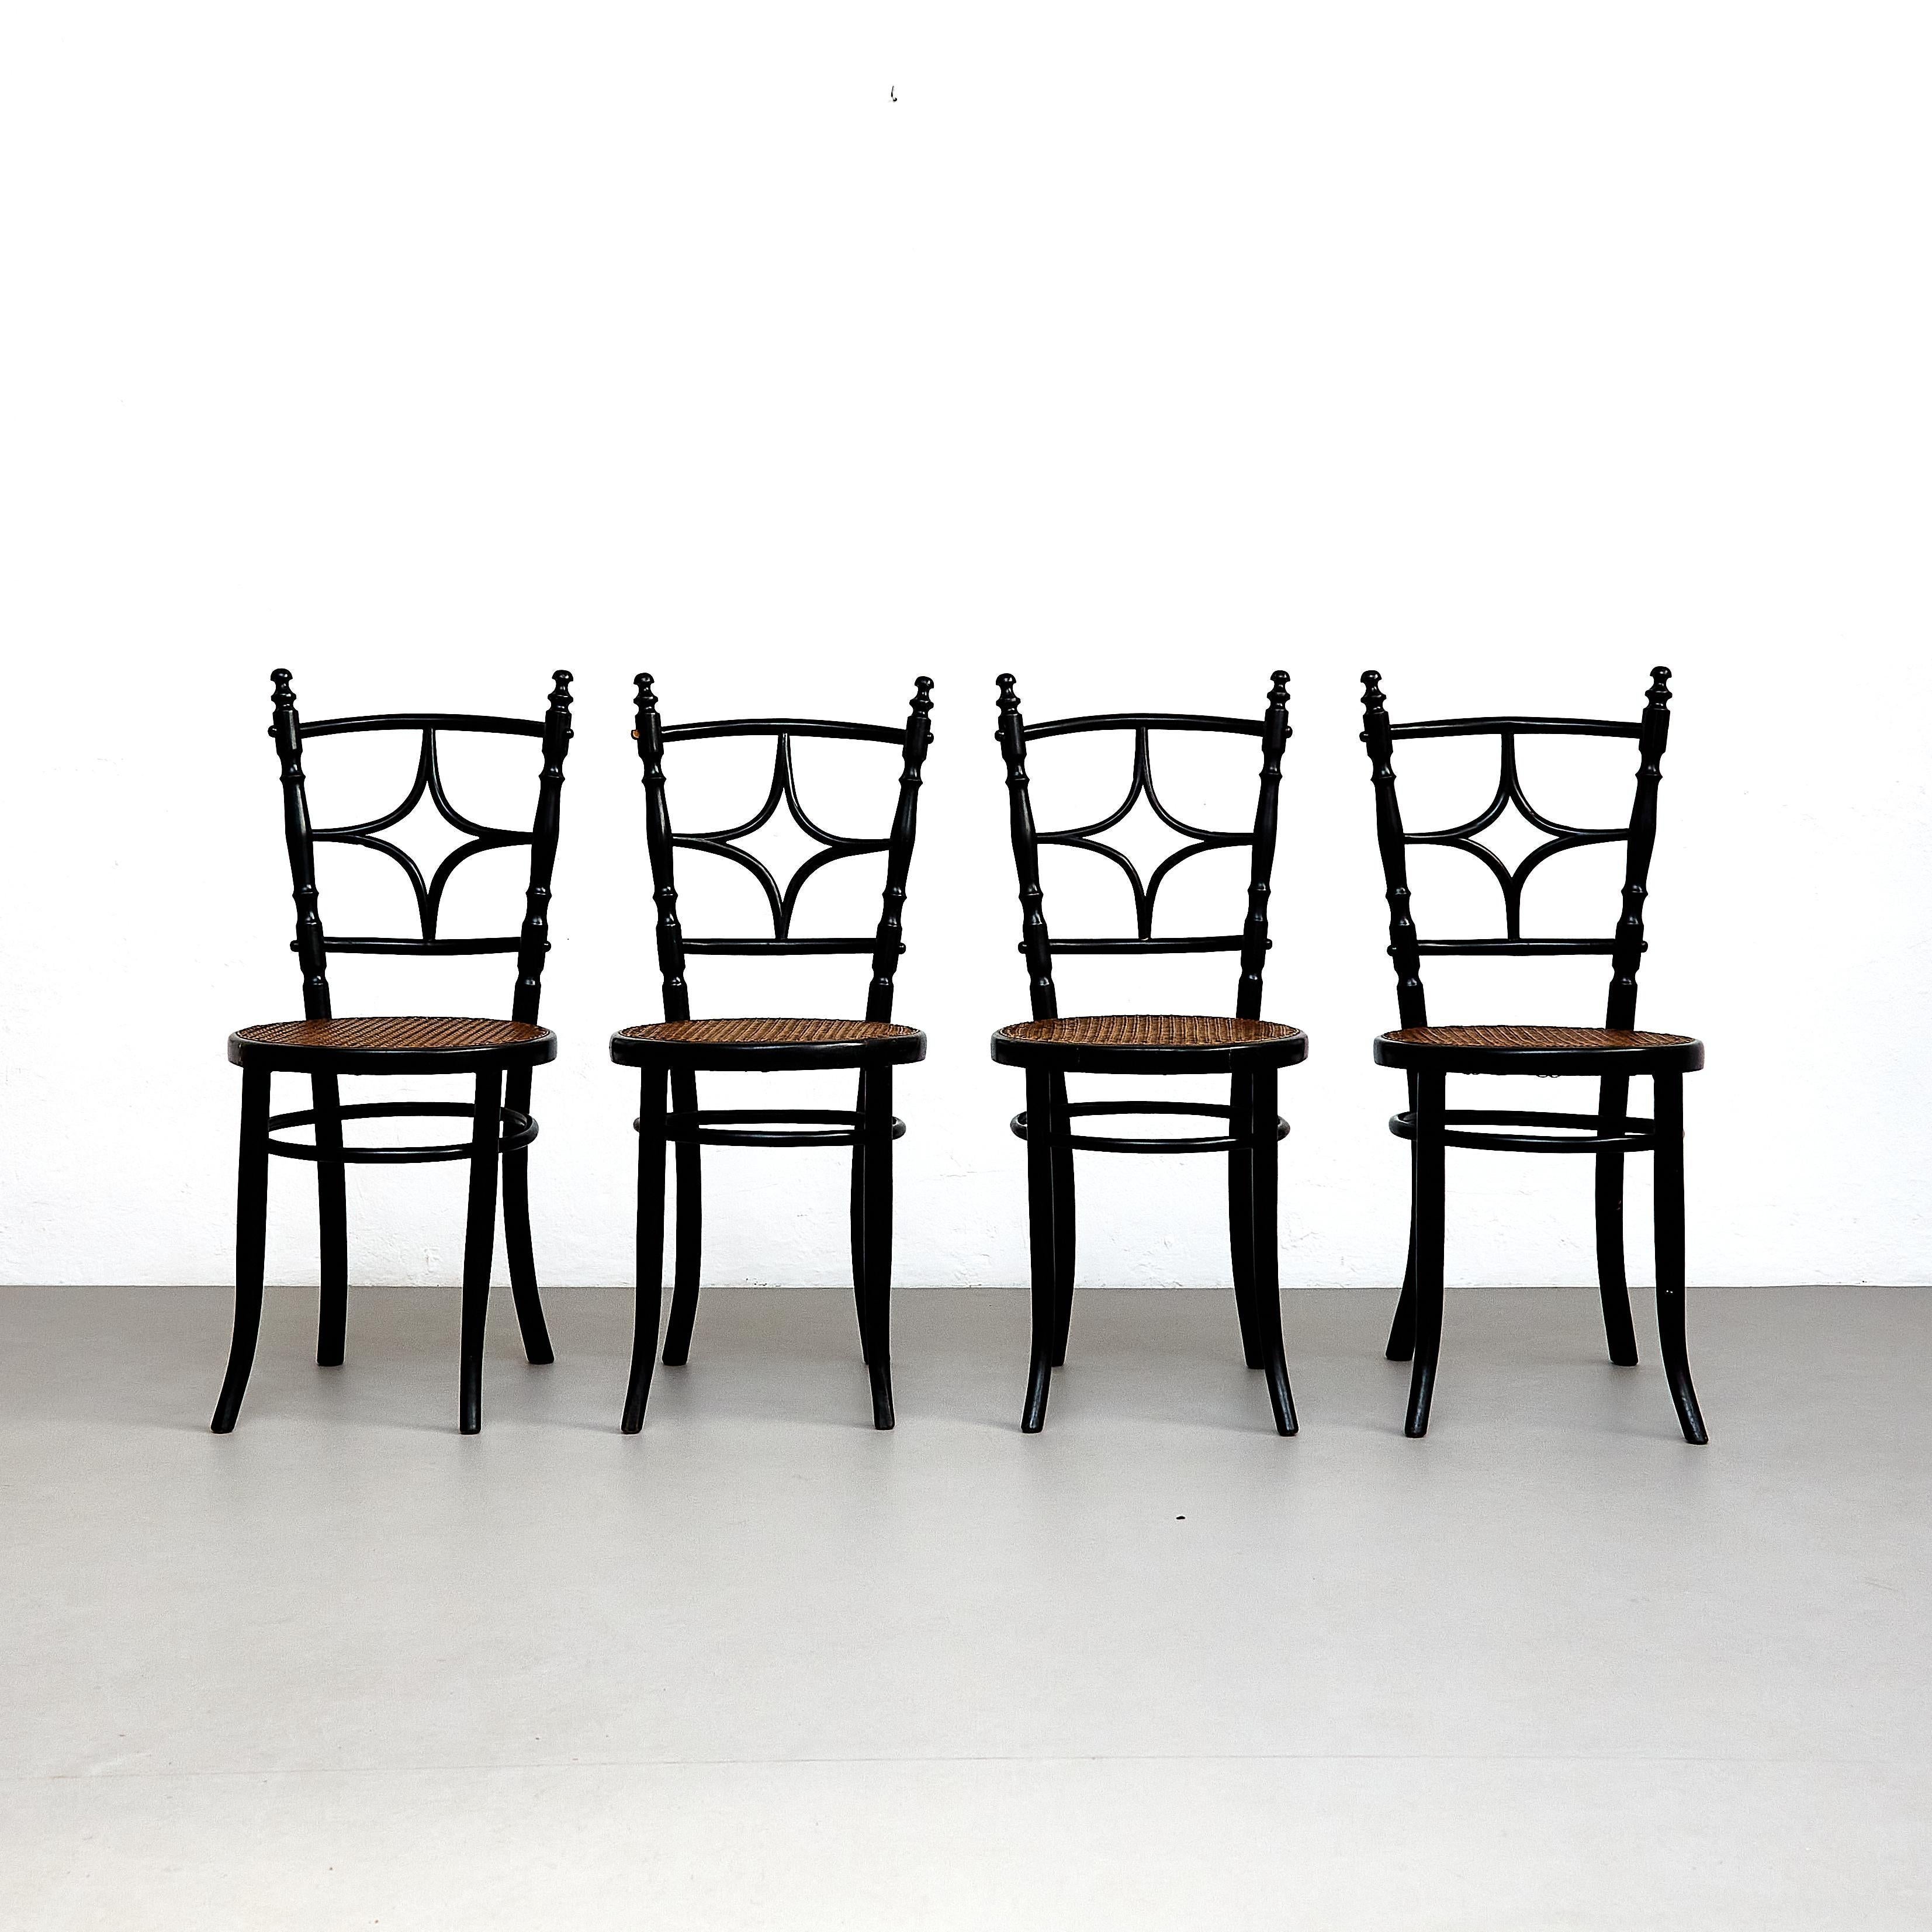 Ensemble de quatre chaises françaises en bois rustique.

Fabriqué en France, vers 1950.

En état d'origine avec une usure mineure conforme à l'âge et à l'utilisation, préservant une belle patine.

Matériaux : 
Bois 

Dimensions : 
P 47,5 cm x L 40,5